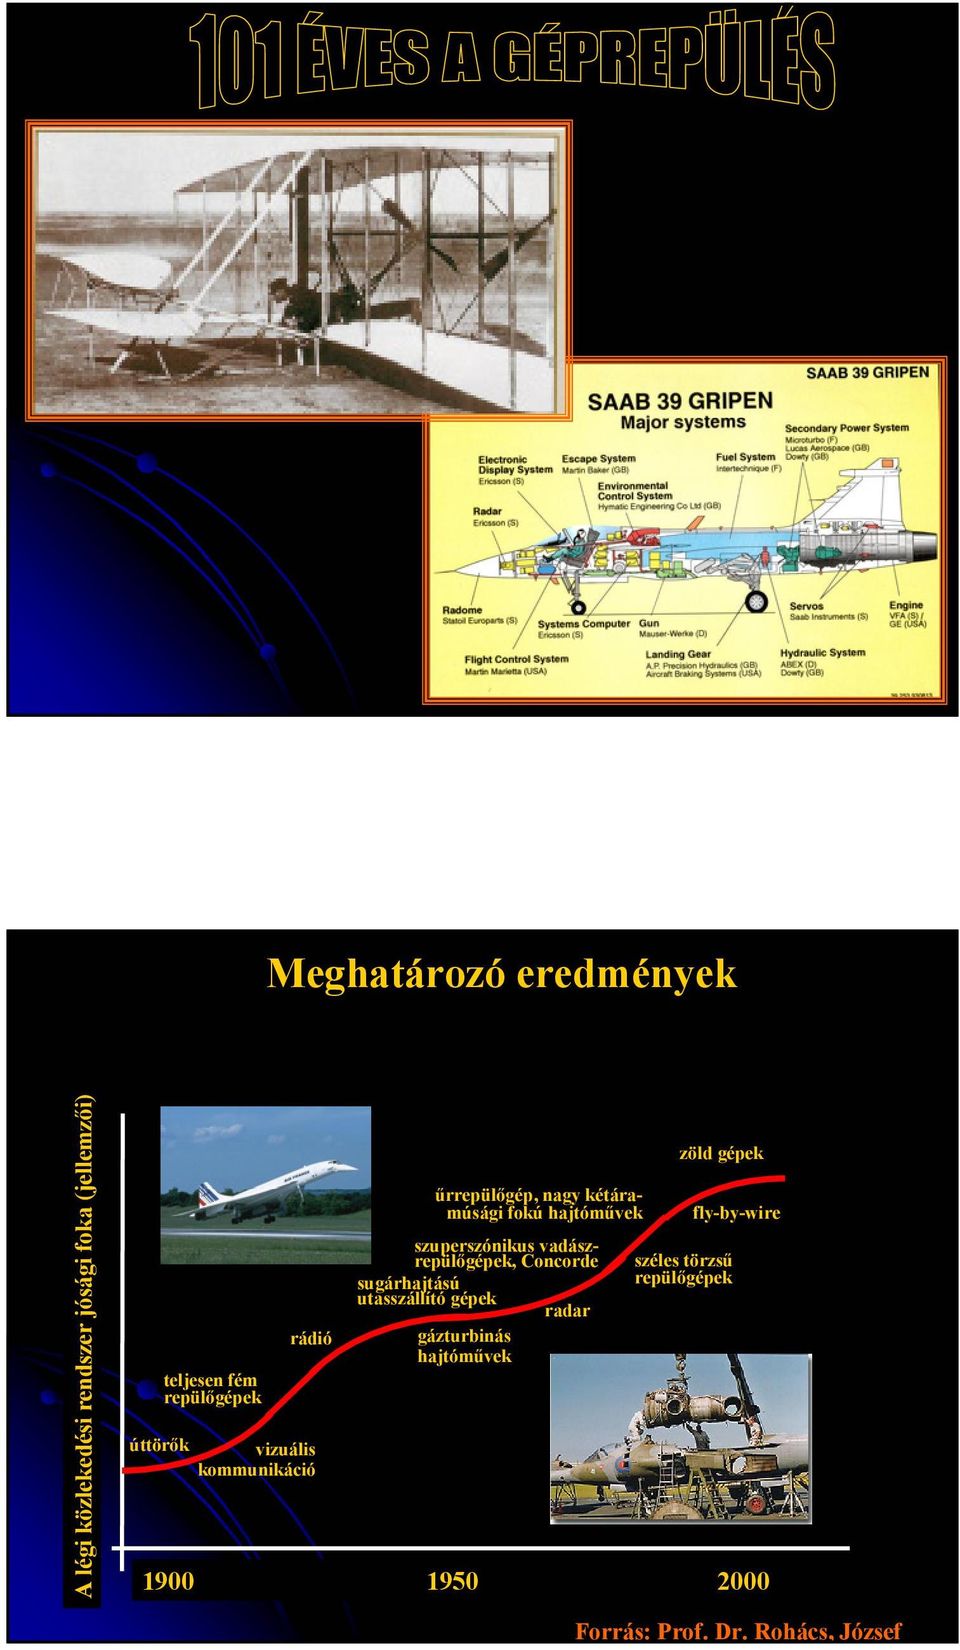 szuperszónikus vadászrepülőgépek, Concorde sugárhajtású utasszállító gépek radar gázturbinás